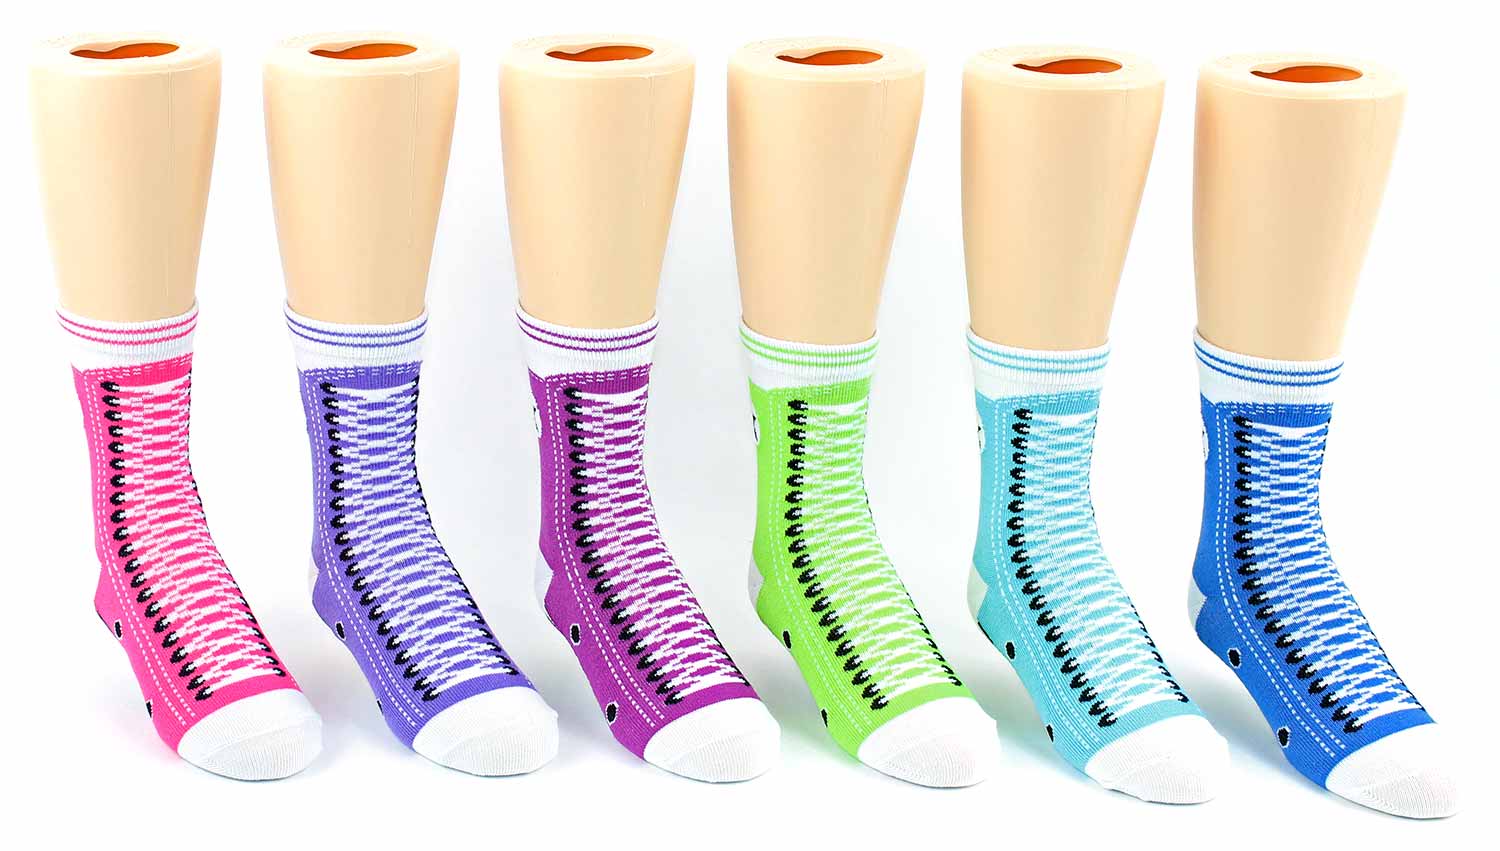 Boy's & Girl's Toddler Novelty Crew Socks - SNEAKER Print - Size 2-4